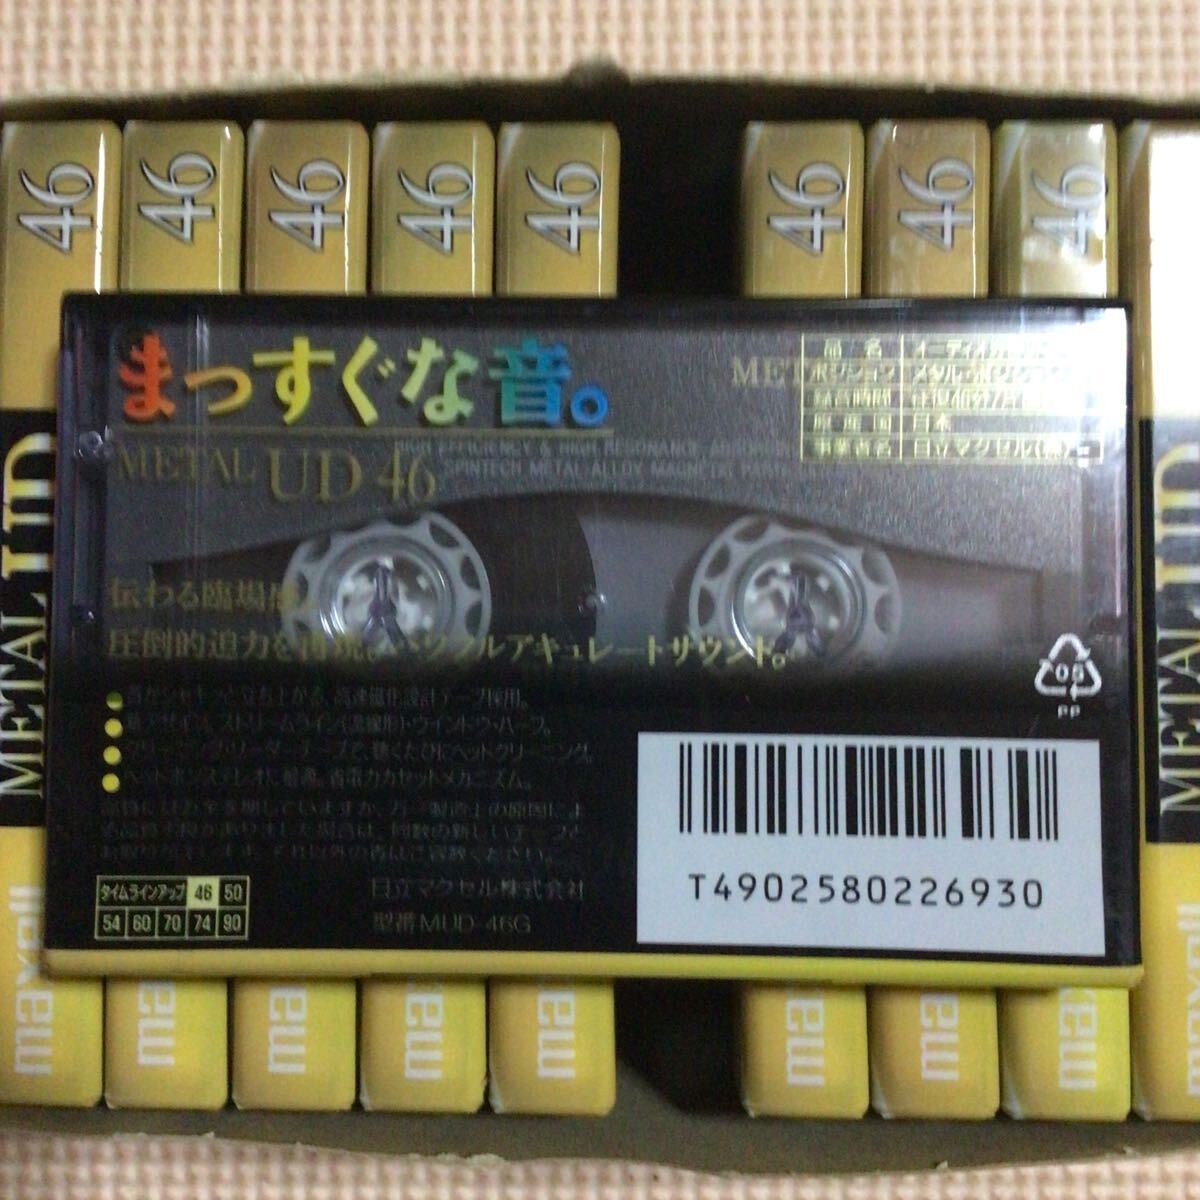 maxell METAL UD 46 メタルポジション カセットテープ10本【未開封新品】■■の画像3